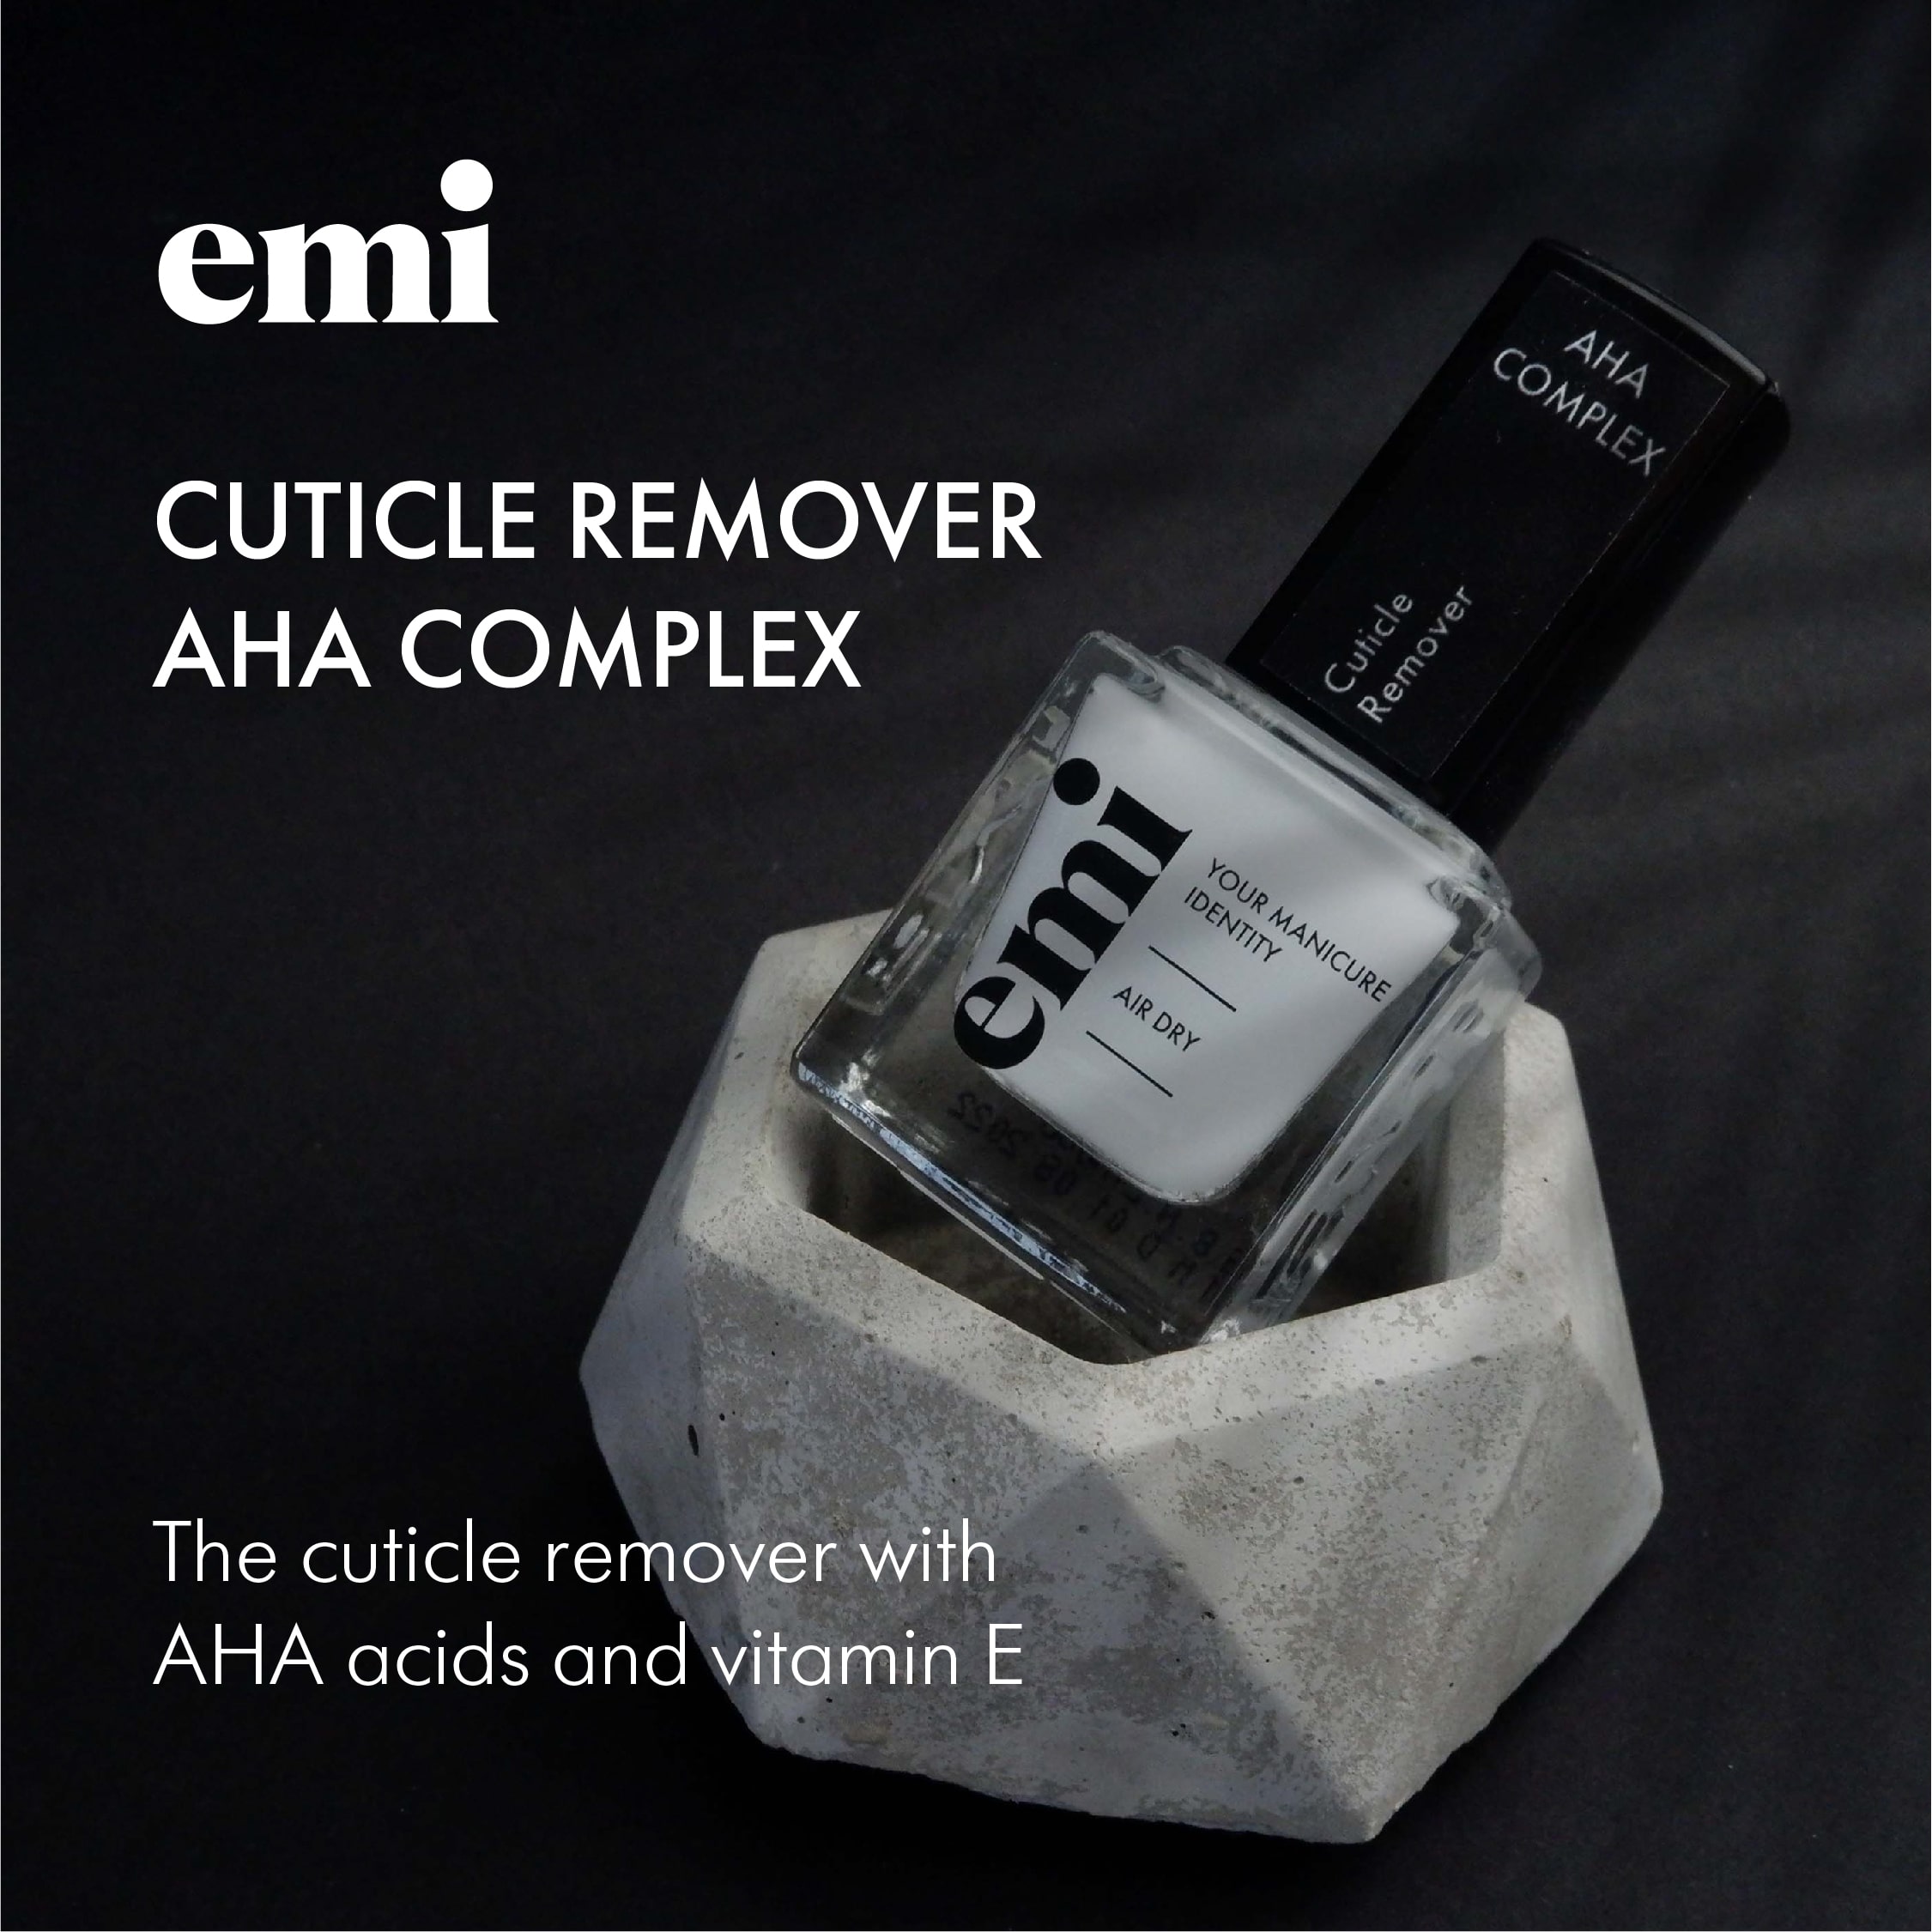 Cuticle Remover AHA complex, 9ml.